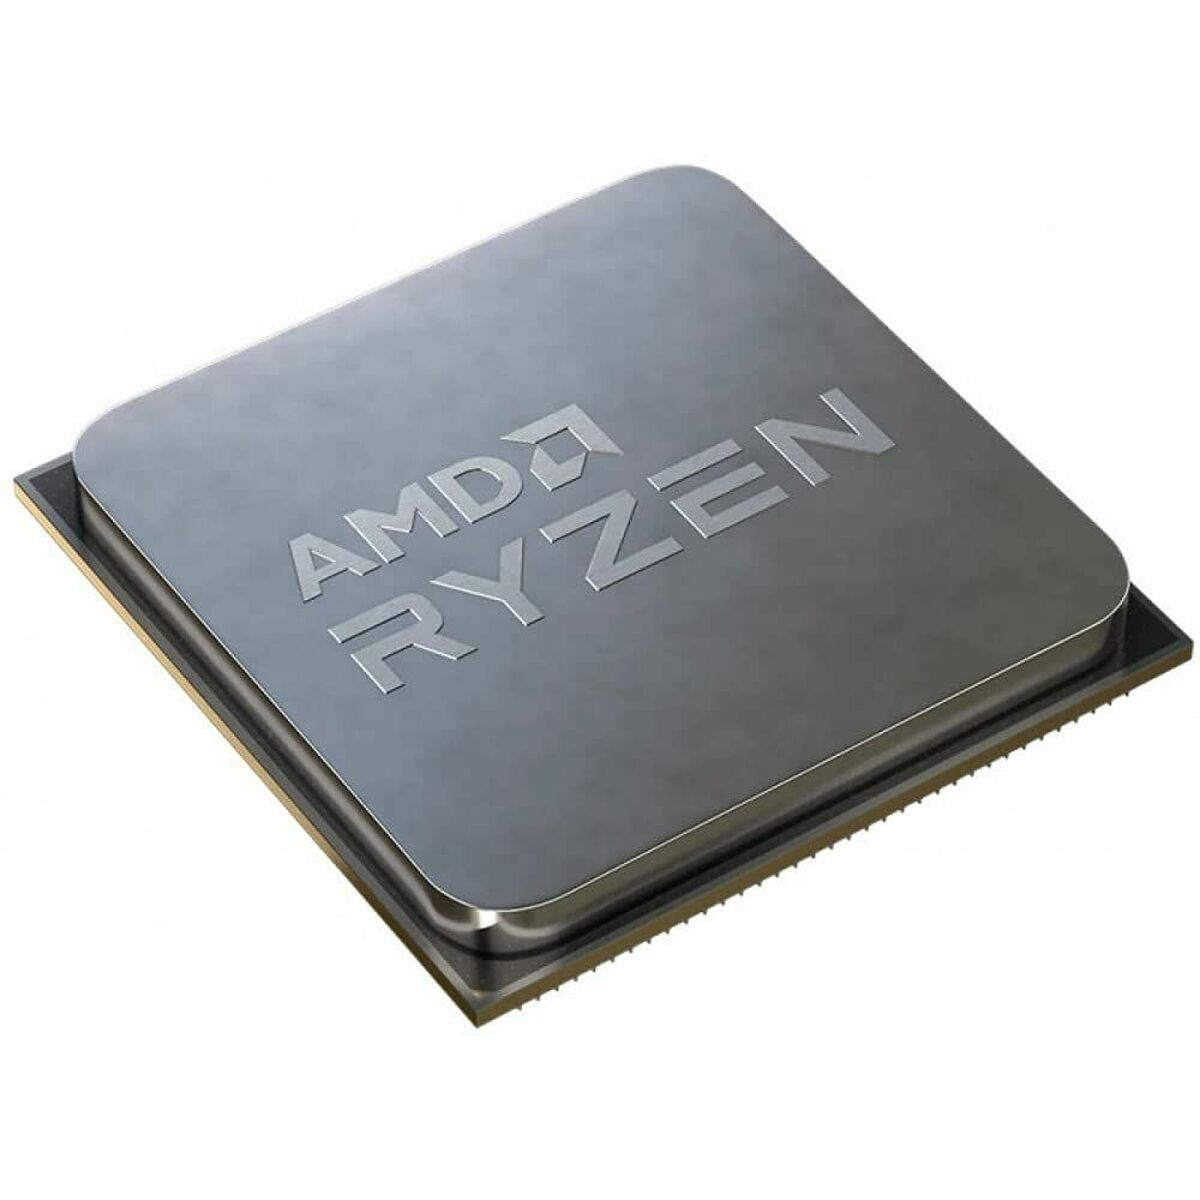 AMD Mehrfarbig mit 5700G Boxed-Kühler, Prozessor